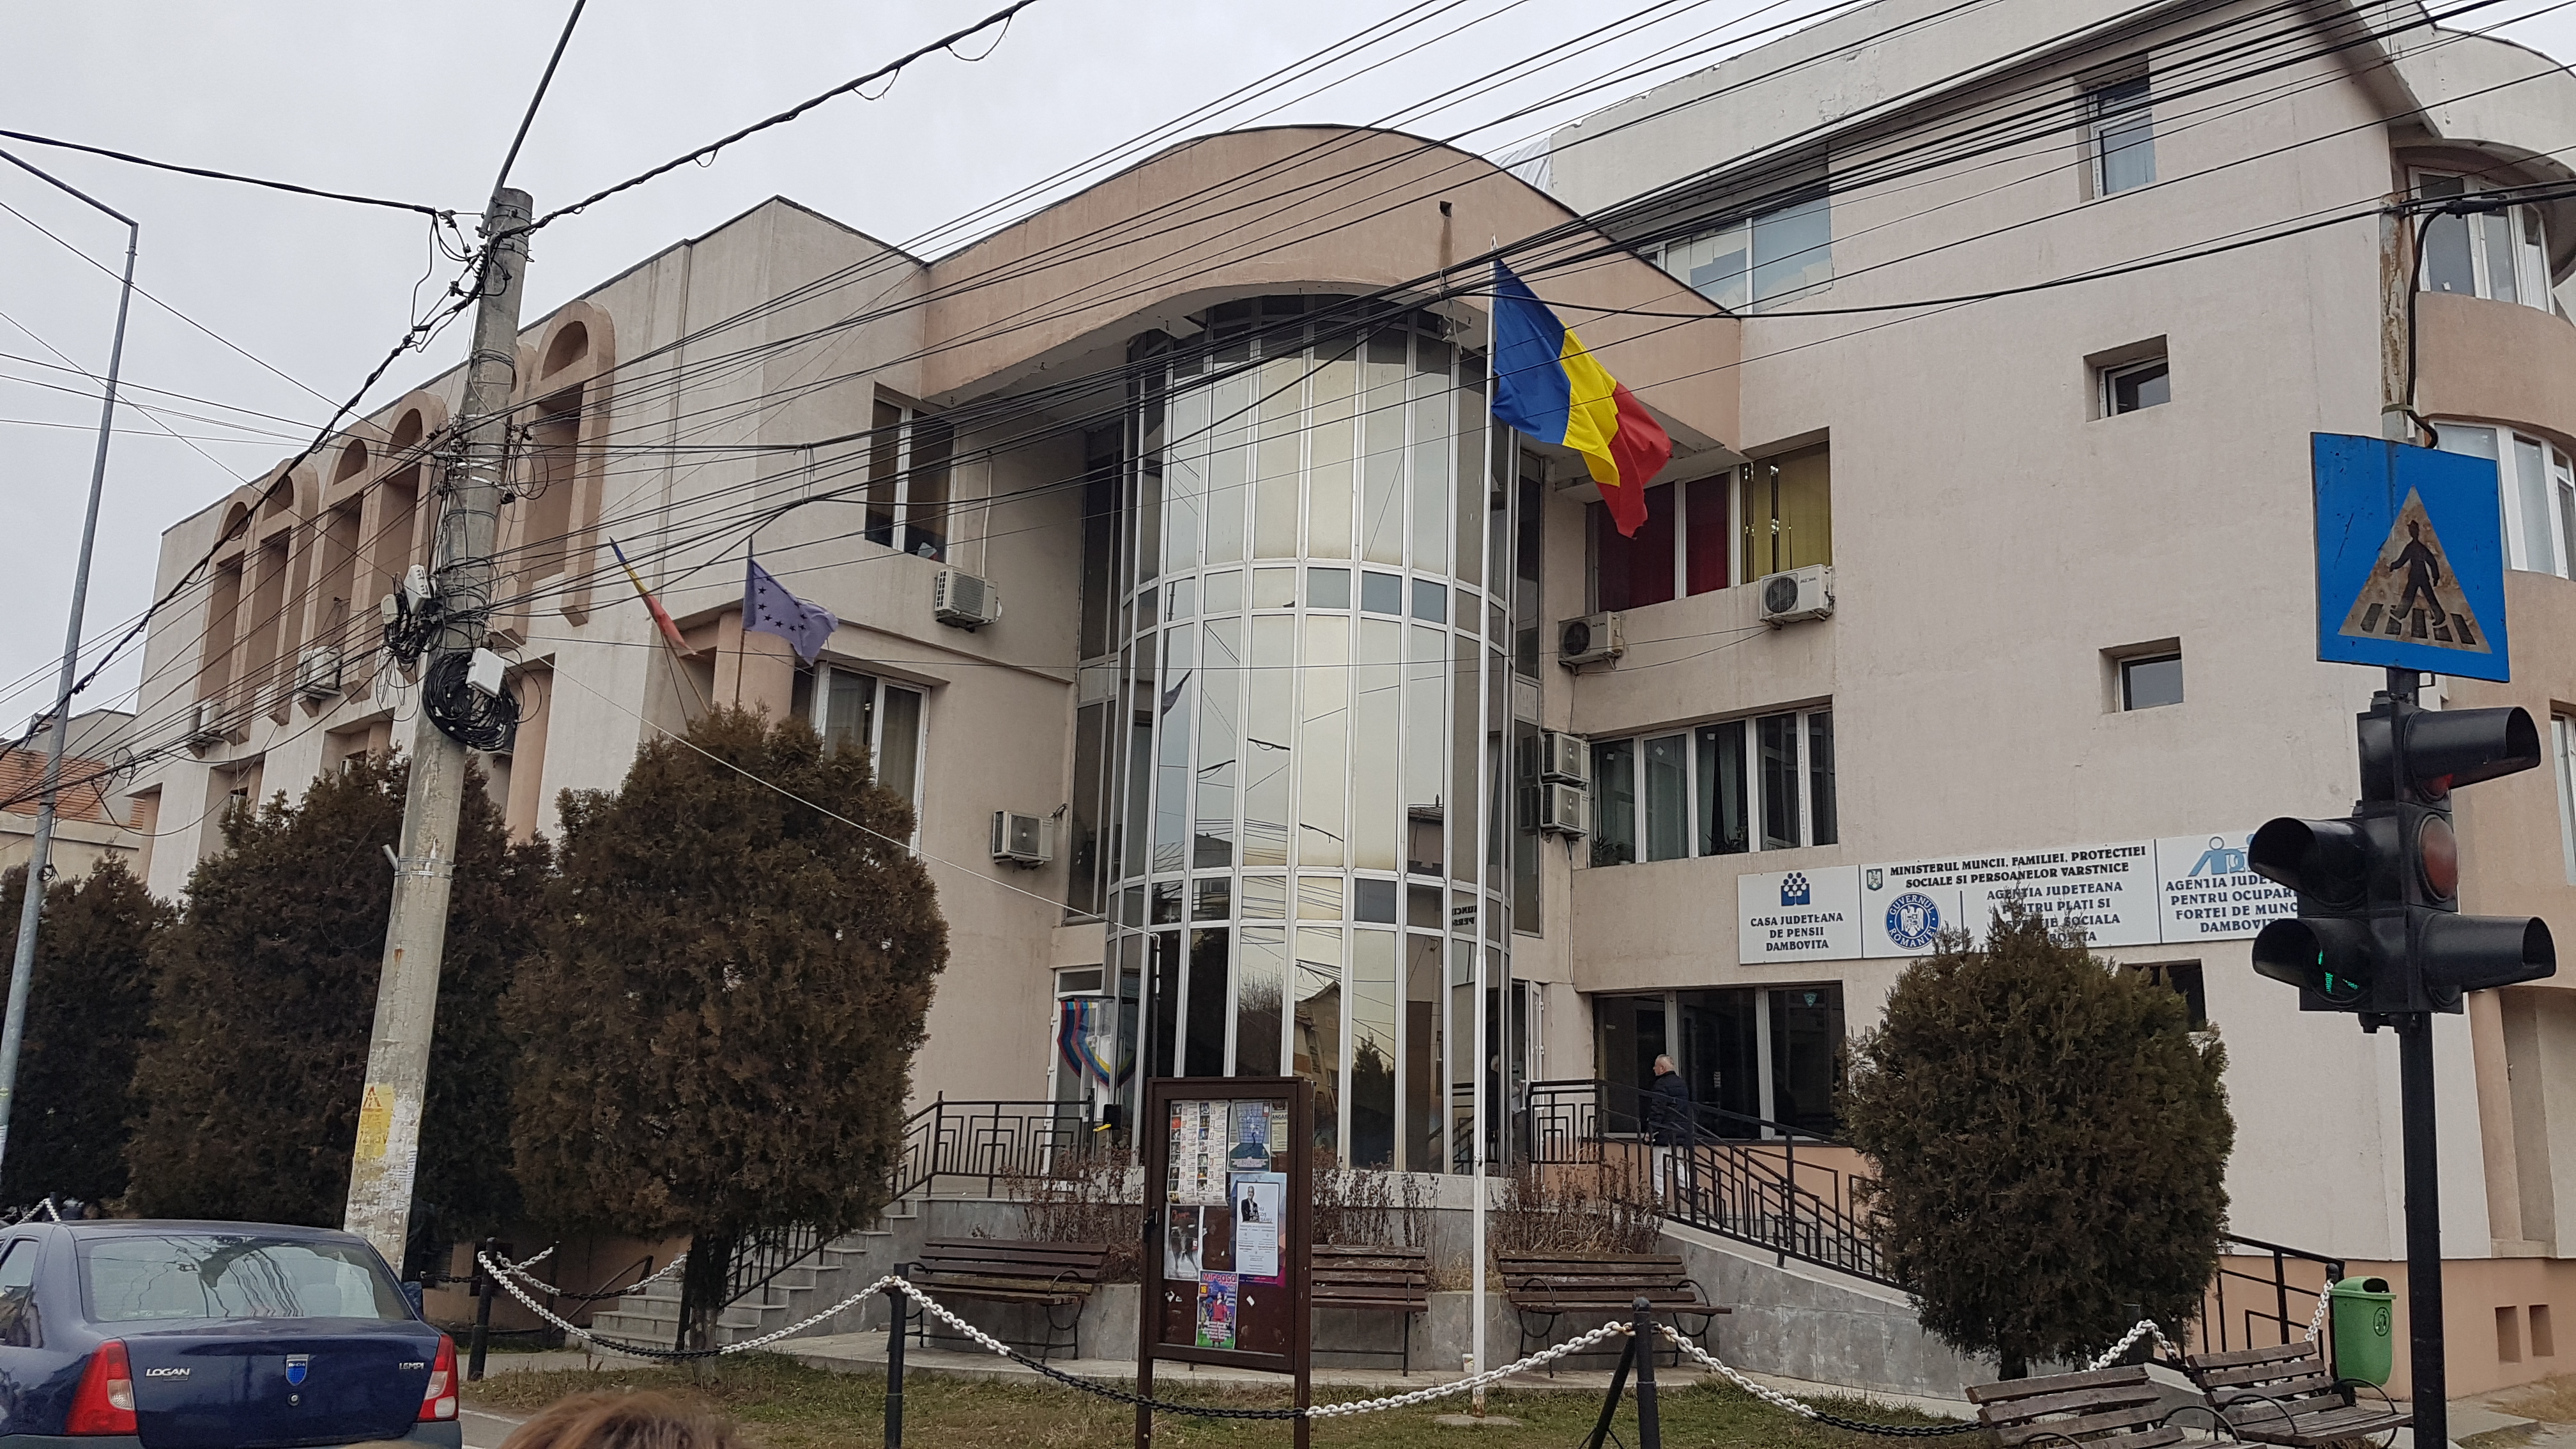 Casa Județeană de Pensii Dâmbovița scoate la concurs 4 posturi contractuale pe perioadă determinată. Sunt disponibile posturi de consilier și referent debutanți.